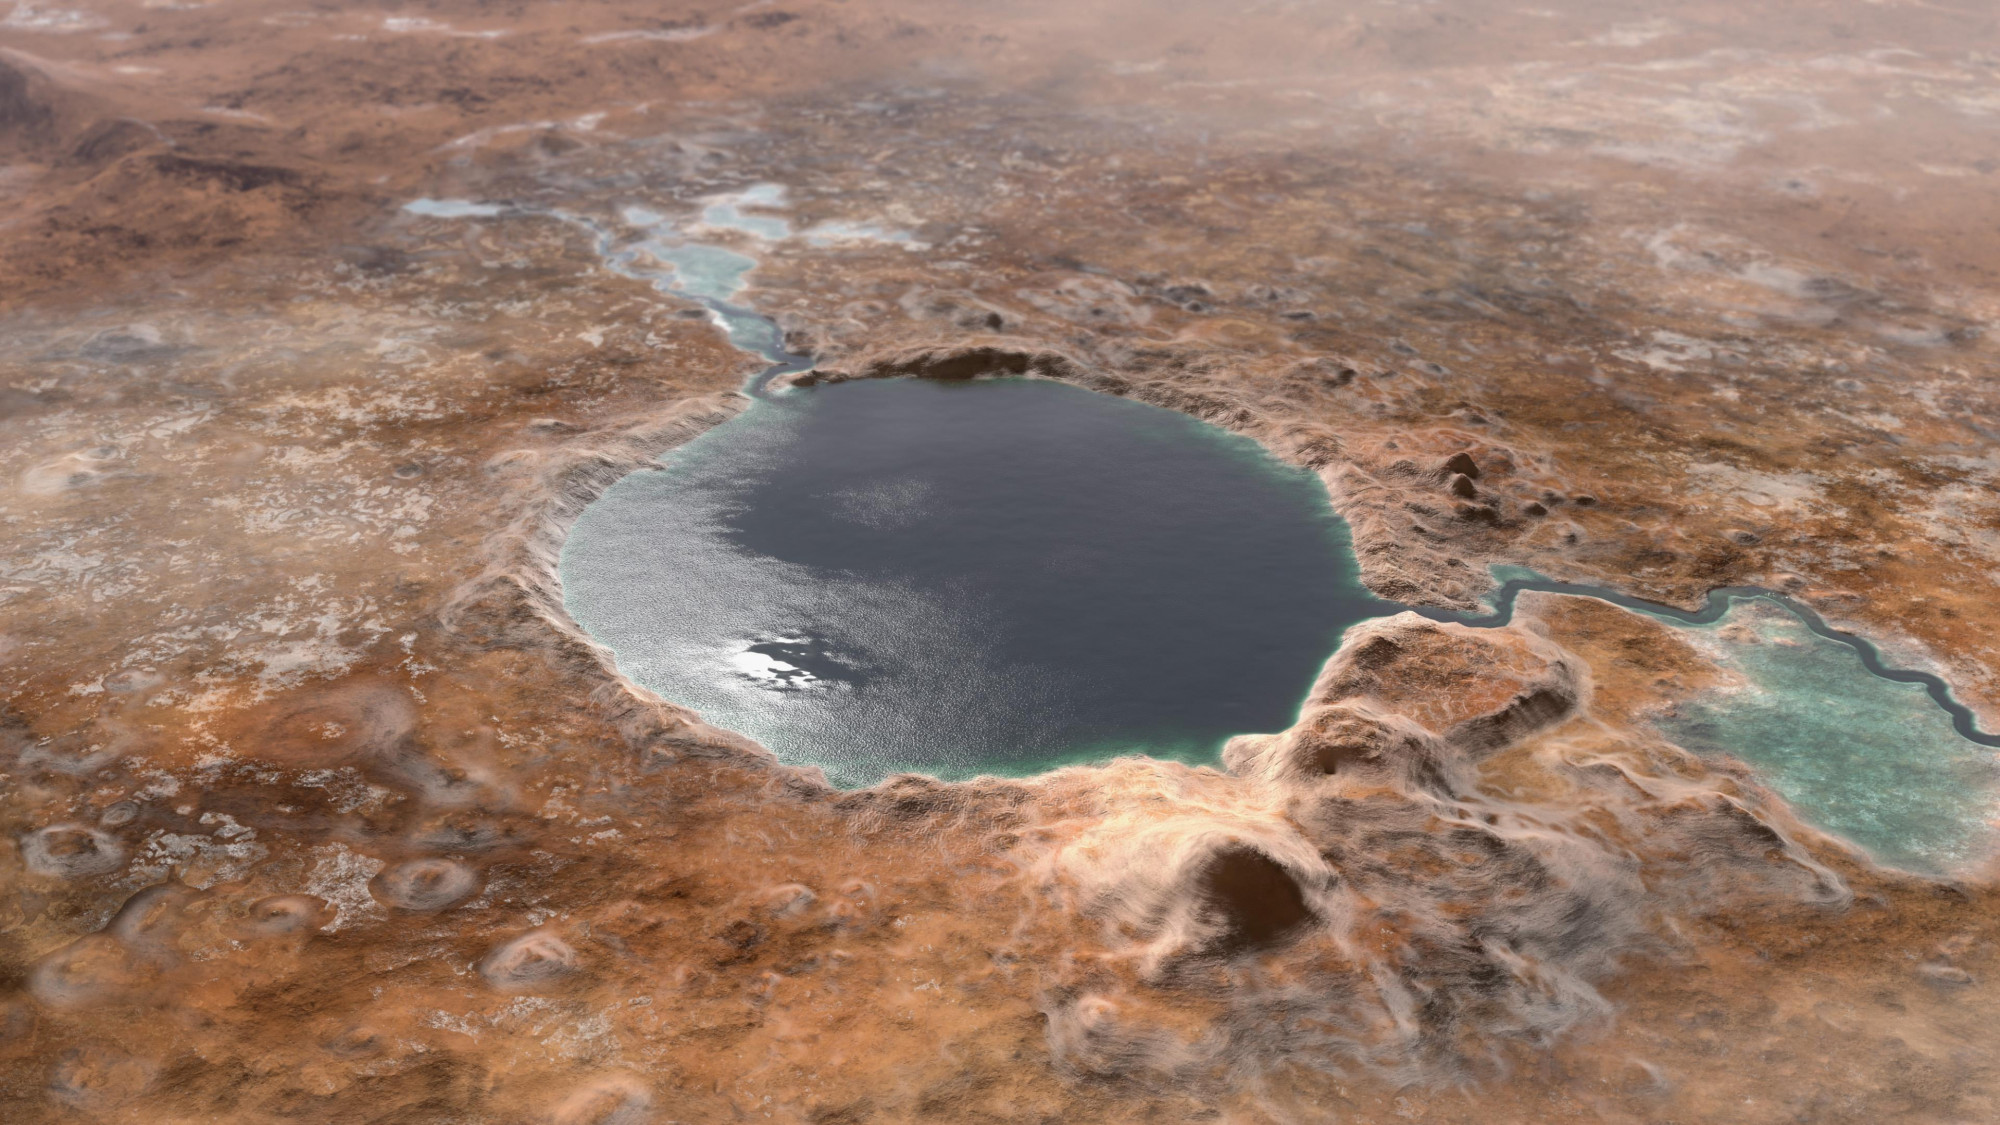 Az amerikai űrügynökség Perseverance marsjárója által vizsgált Jezero krátert egy tó töltötte ki 3,5-4 milliárd évvel ezelőtt